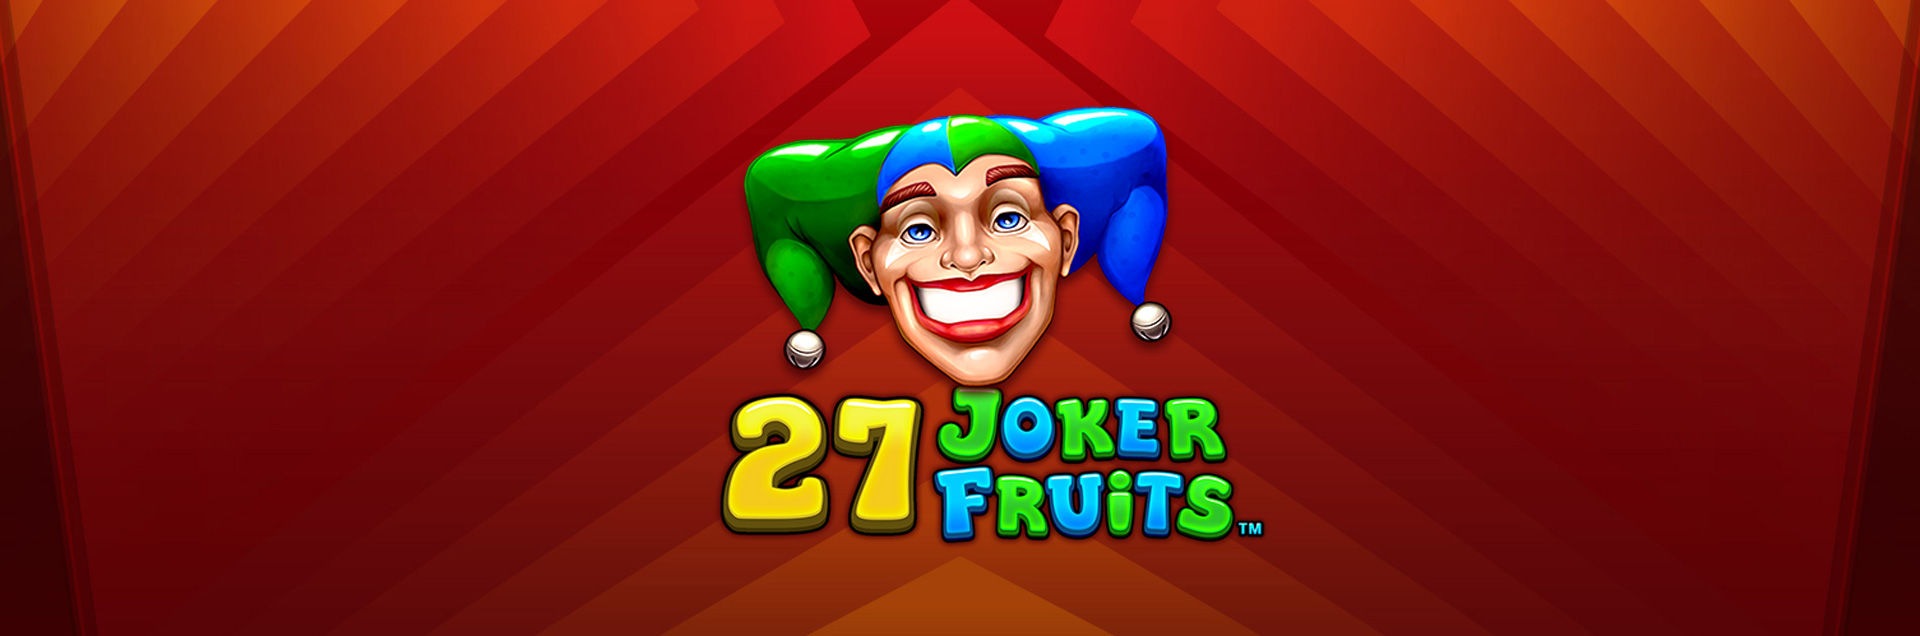 27 Joker Fruits header games2